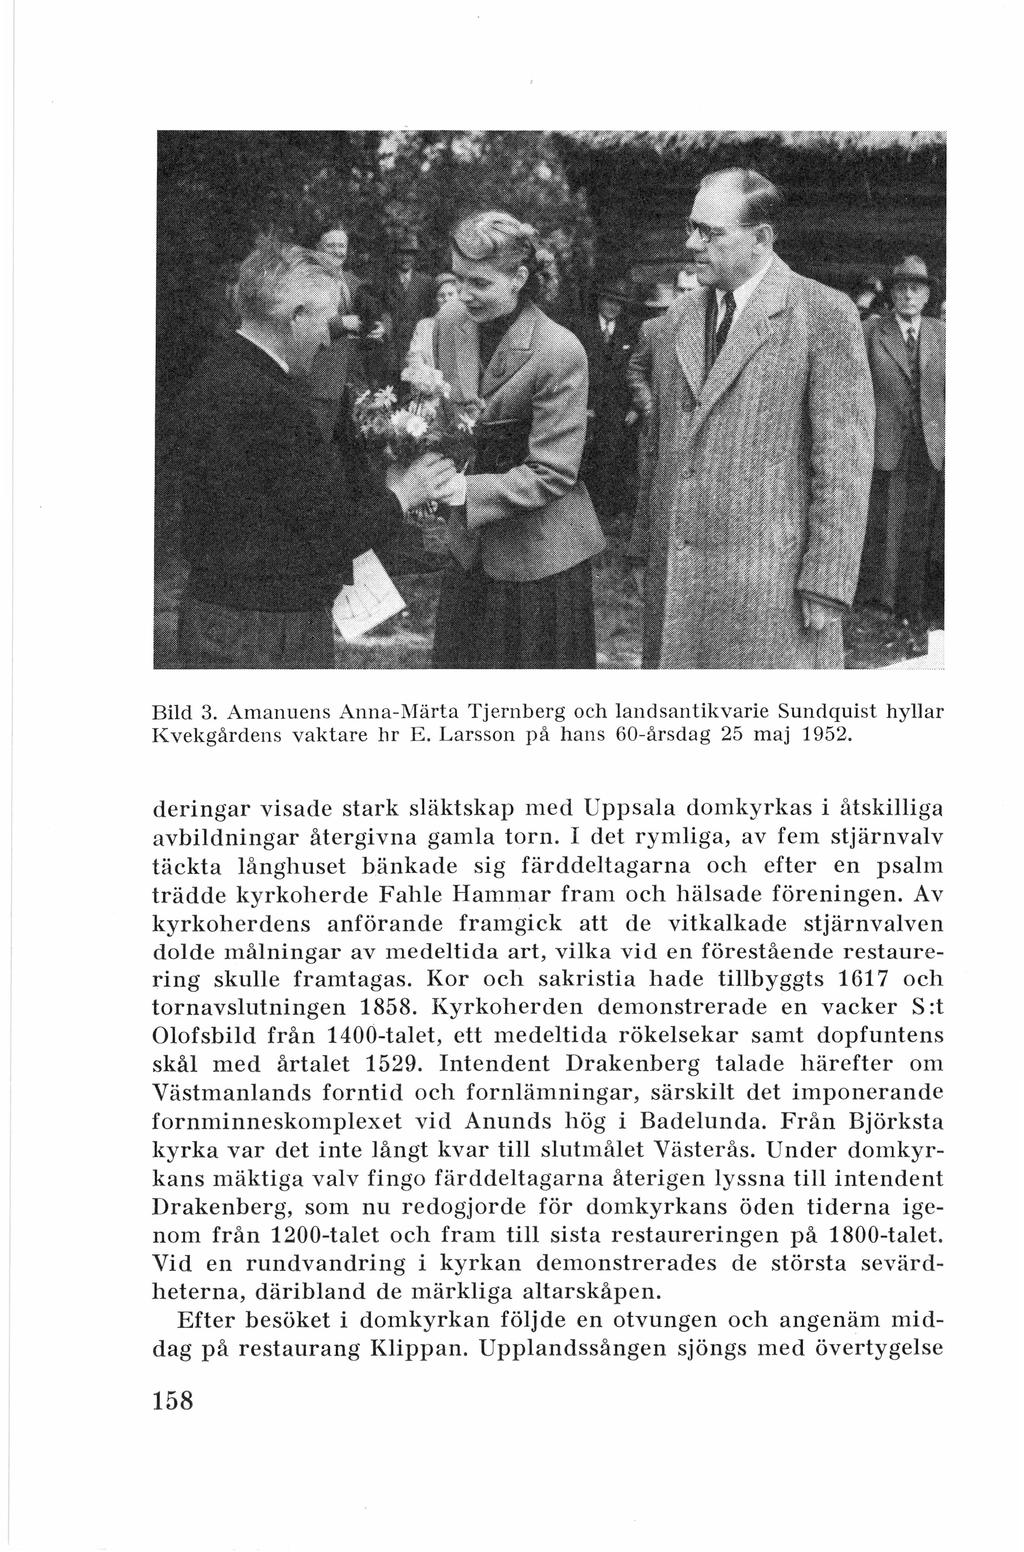 Bild 3. Amanuens Anna-Märta Tjernberg och Jandsantikvarie Sundquist hyllar Kvekgårdens vaktare hr E. Larsson på han s 60-årsdag 25 maj 1952.